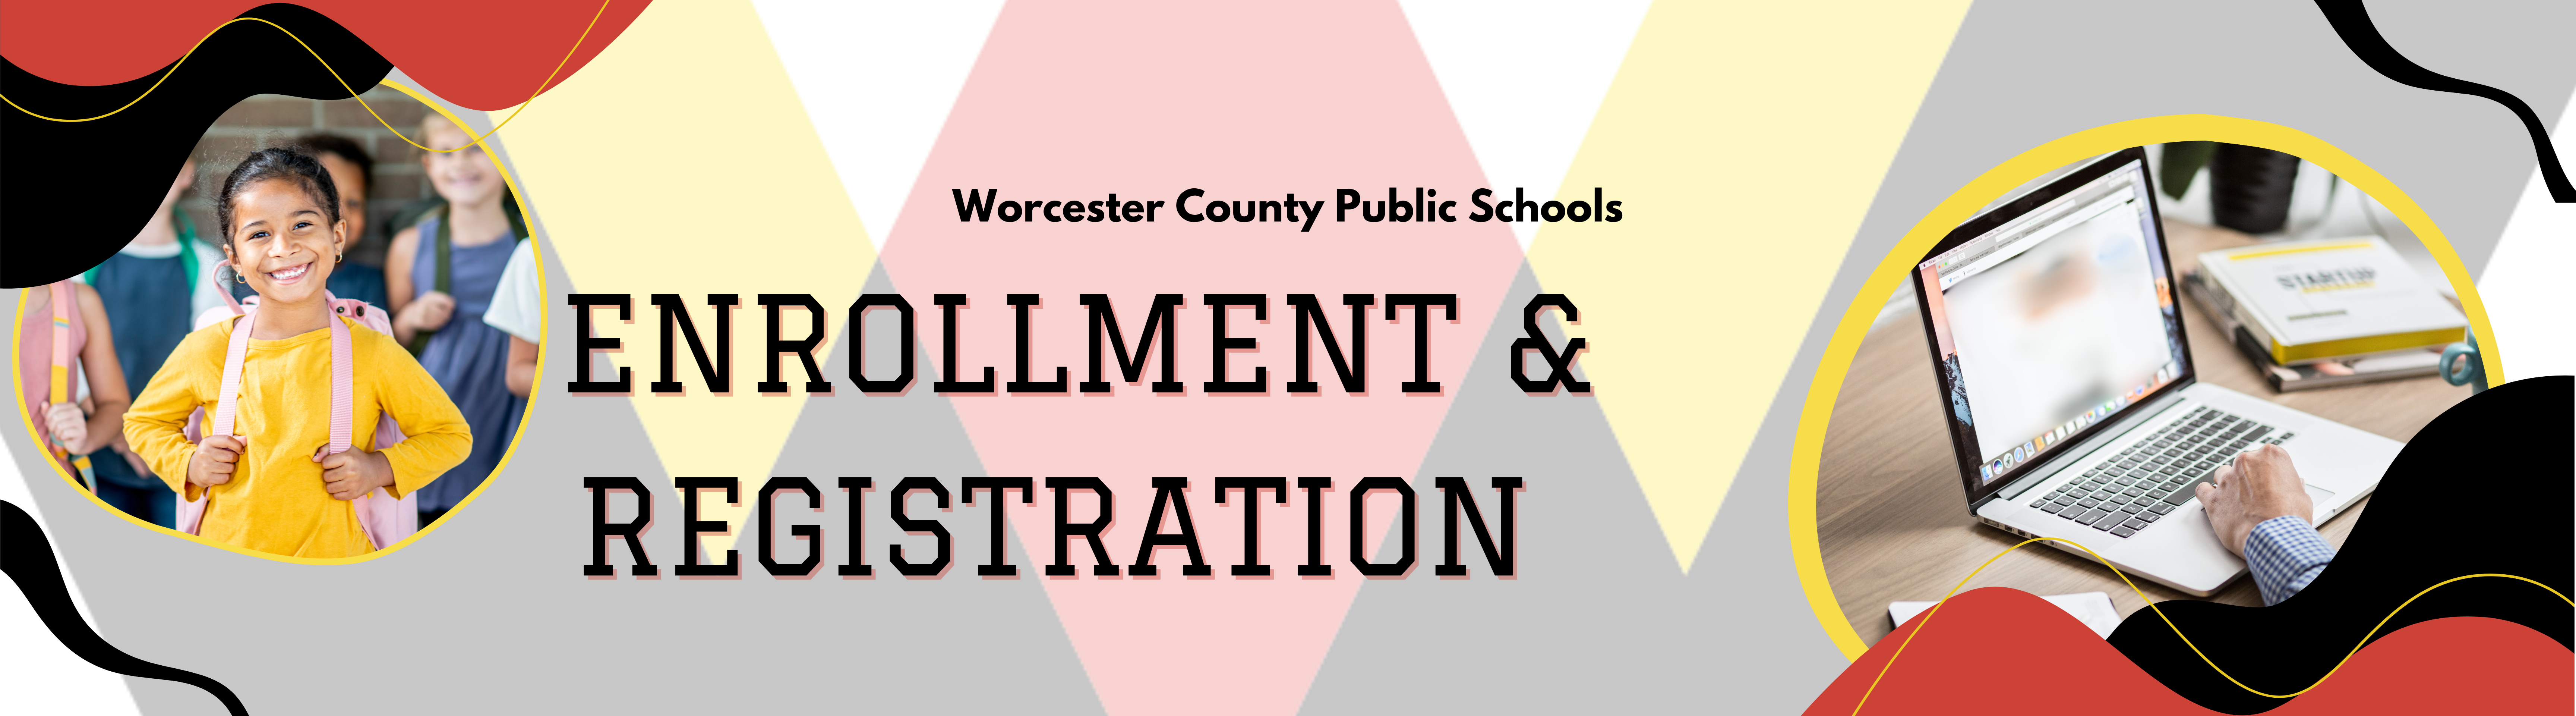 Enrollment and registration banner image